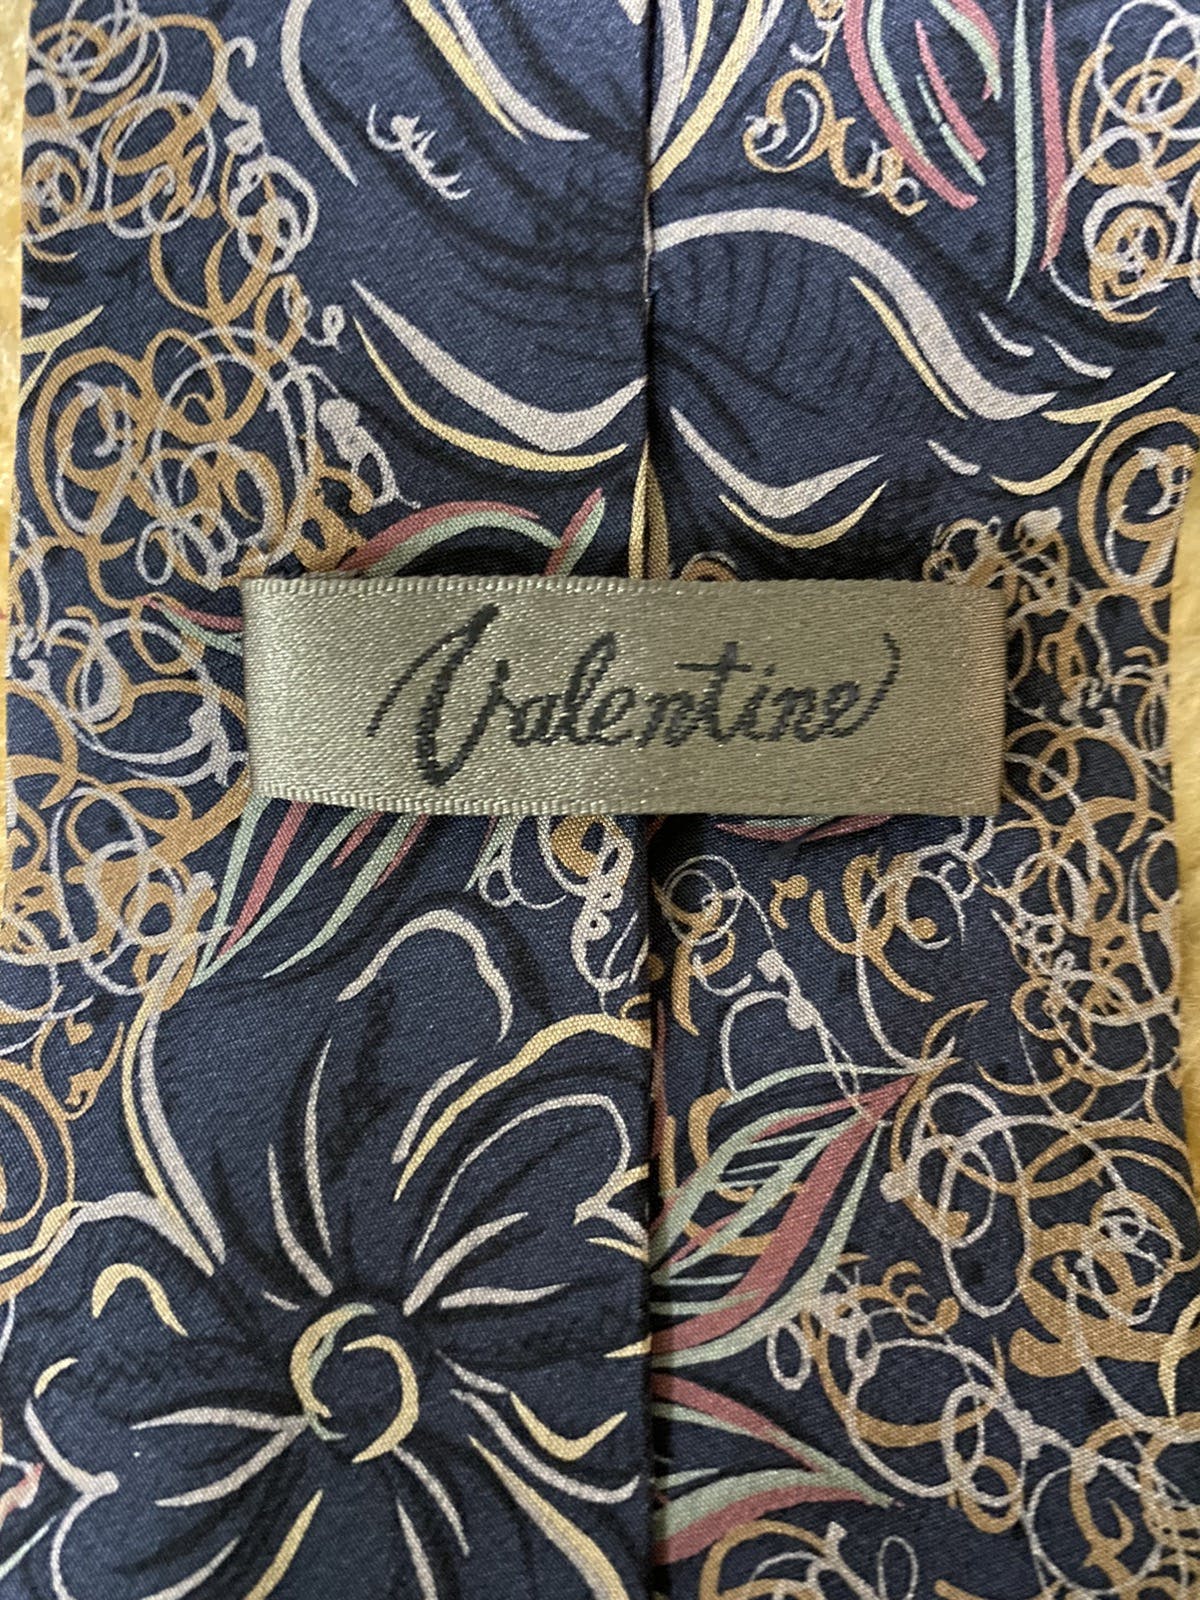 Vintage Valentino Flowers Overprints Silk Necktie - 3